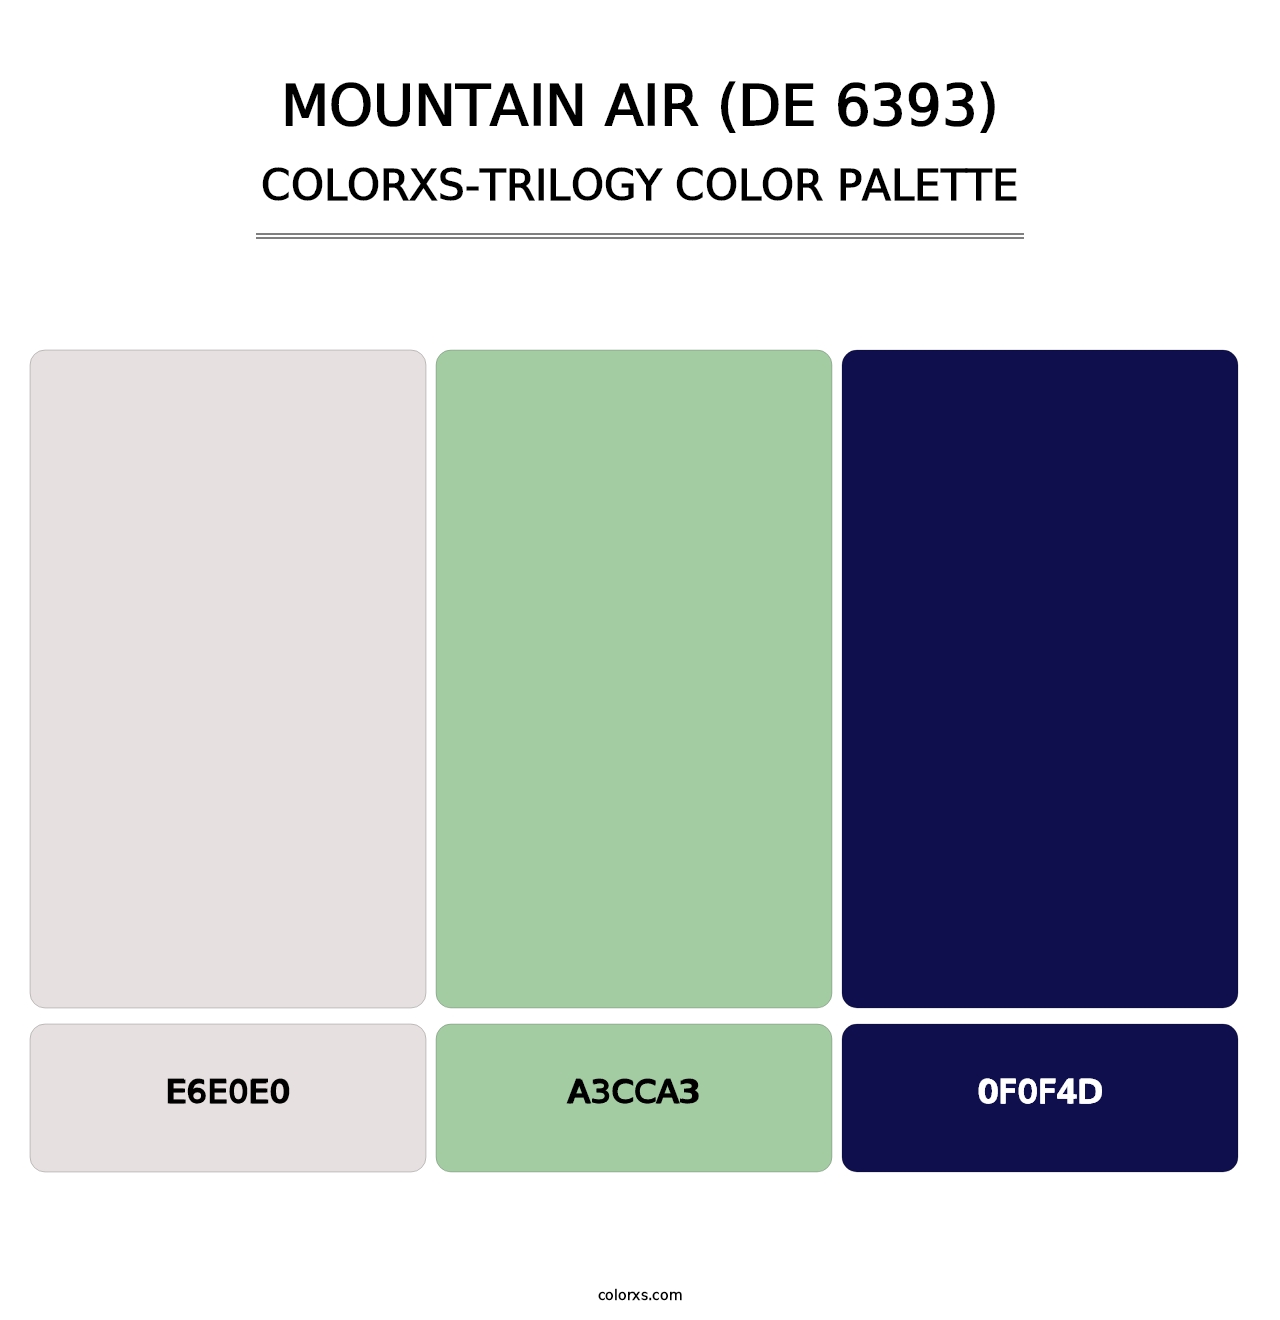 Mountain Air (DE 6393) - Colorxs Trilogy Palette